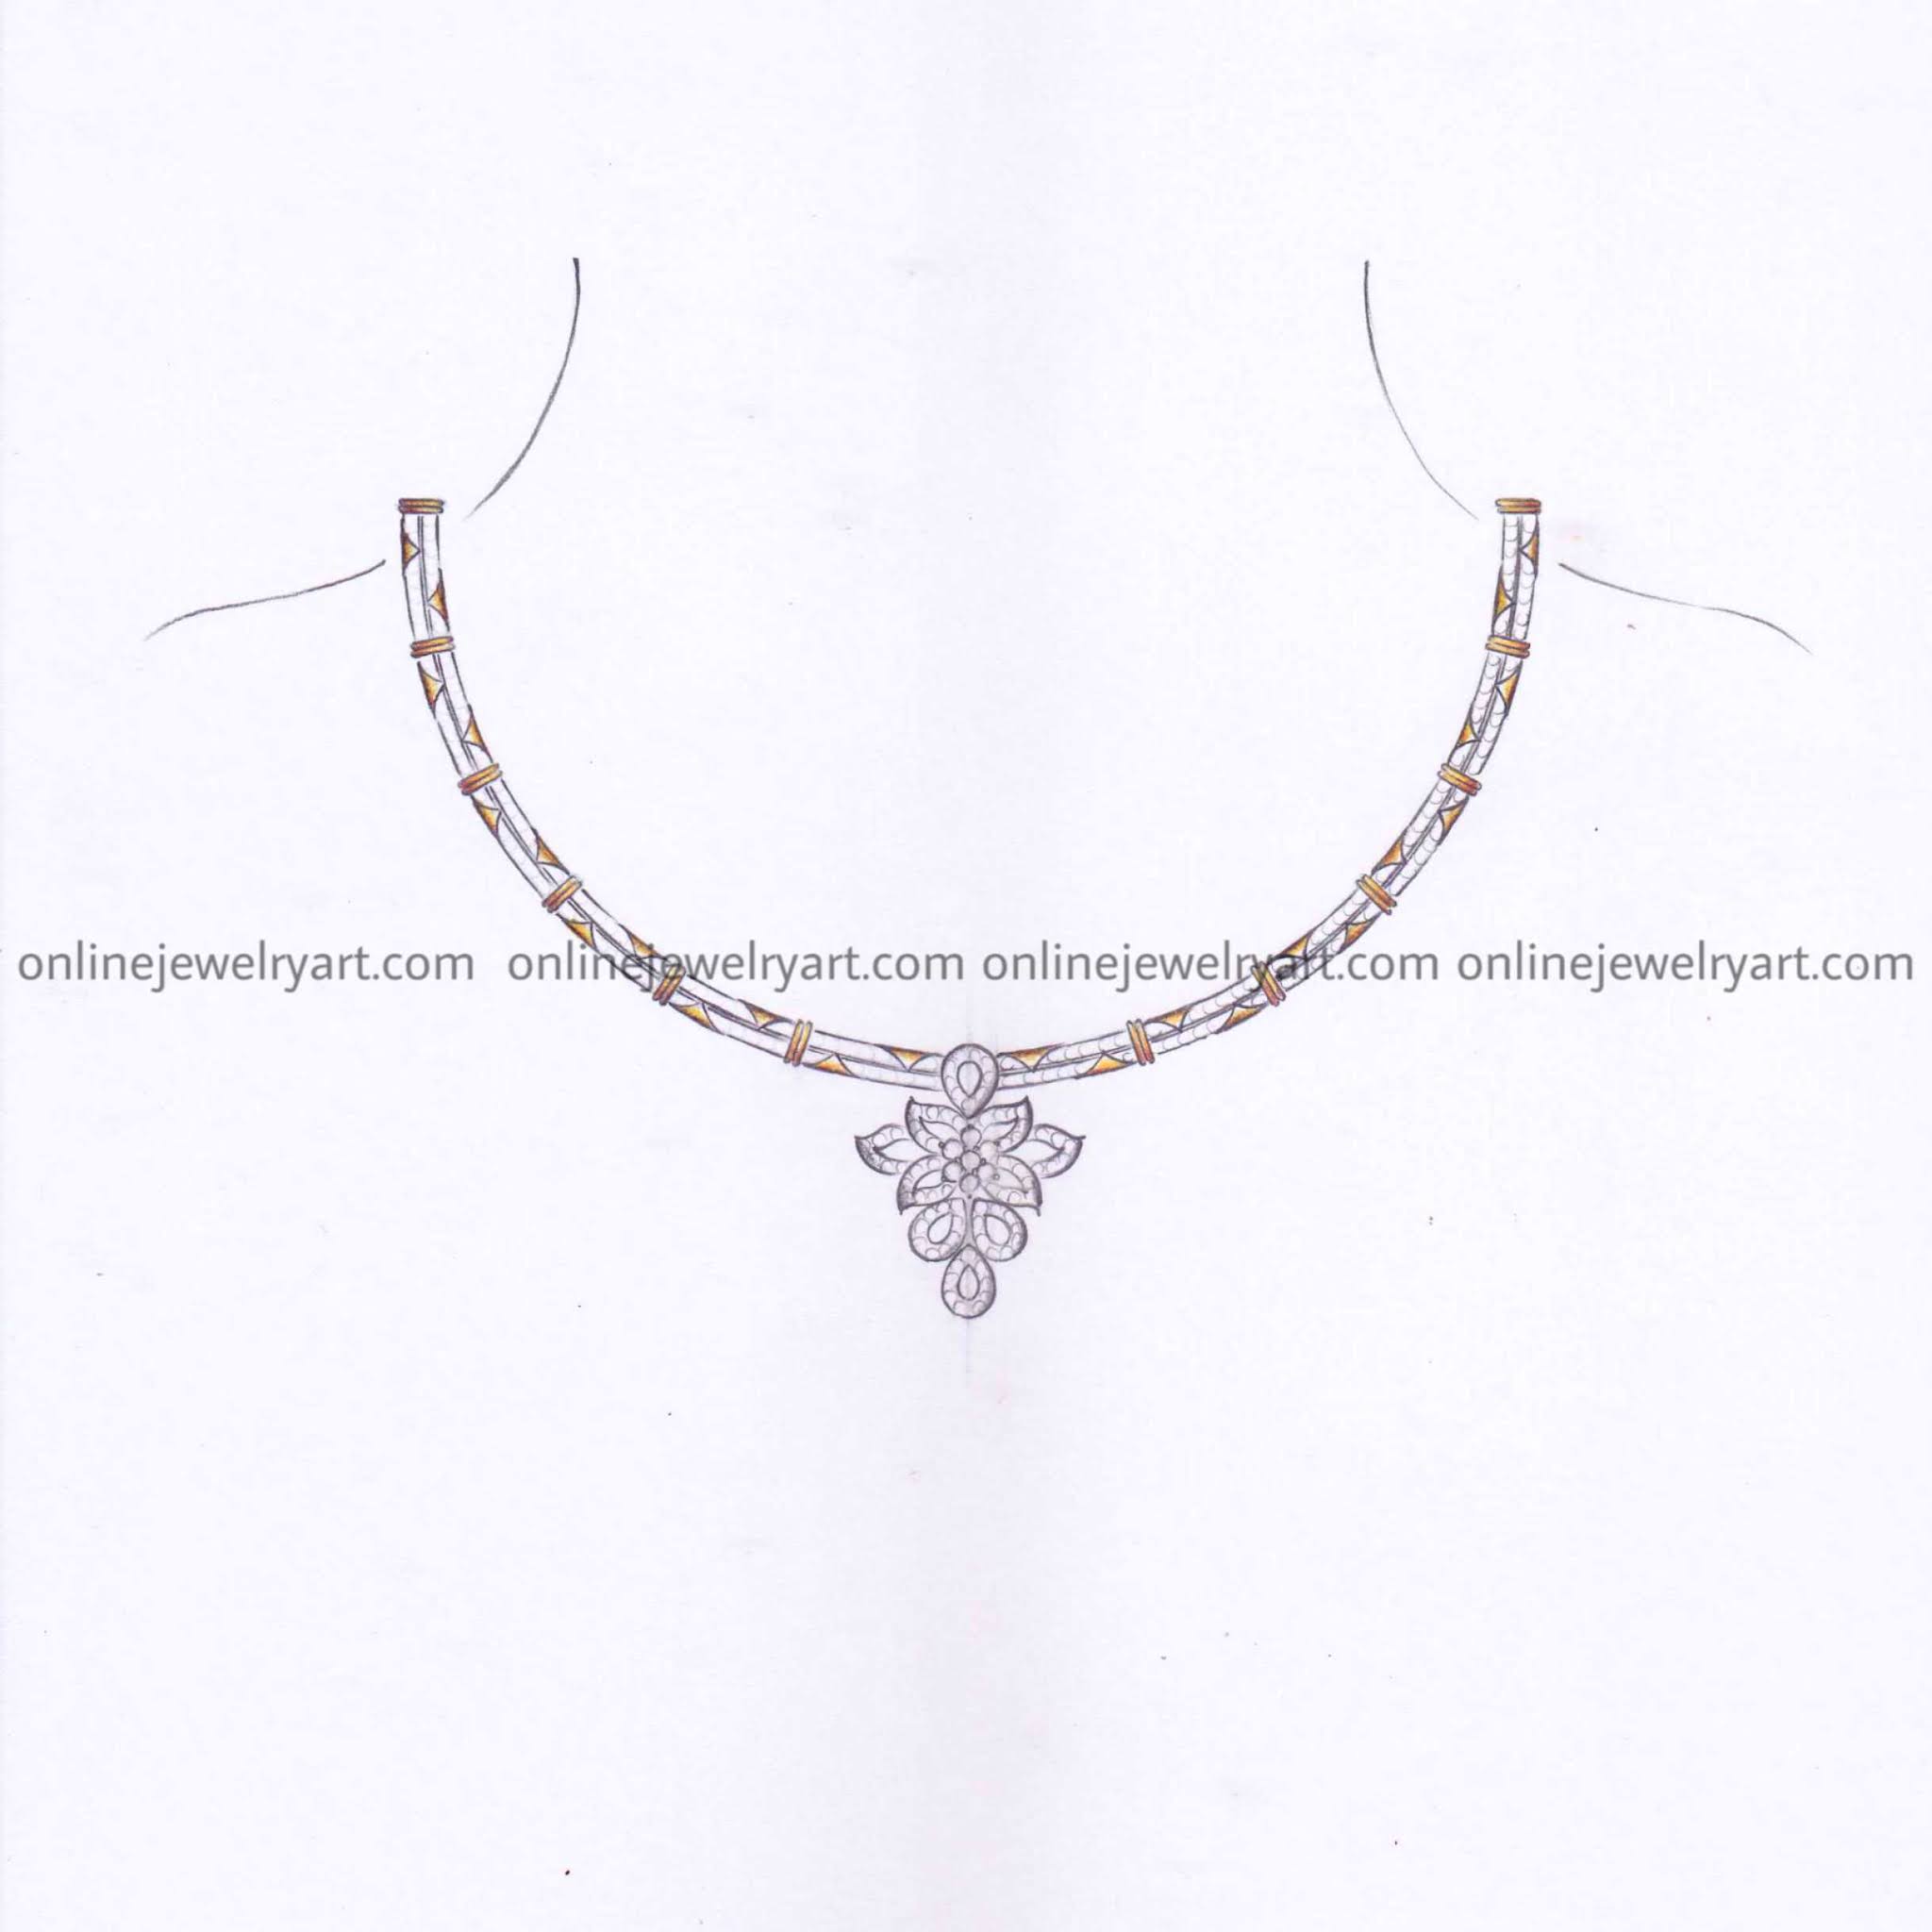 CZ Jewellery Online | Cubic Zirconia Jewelry | CZ Jewellery Necklace Set